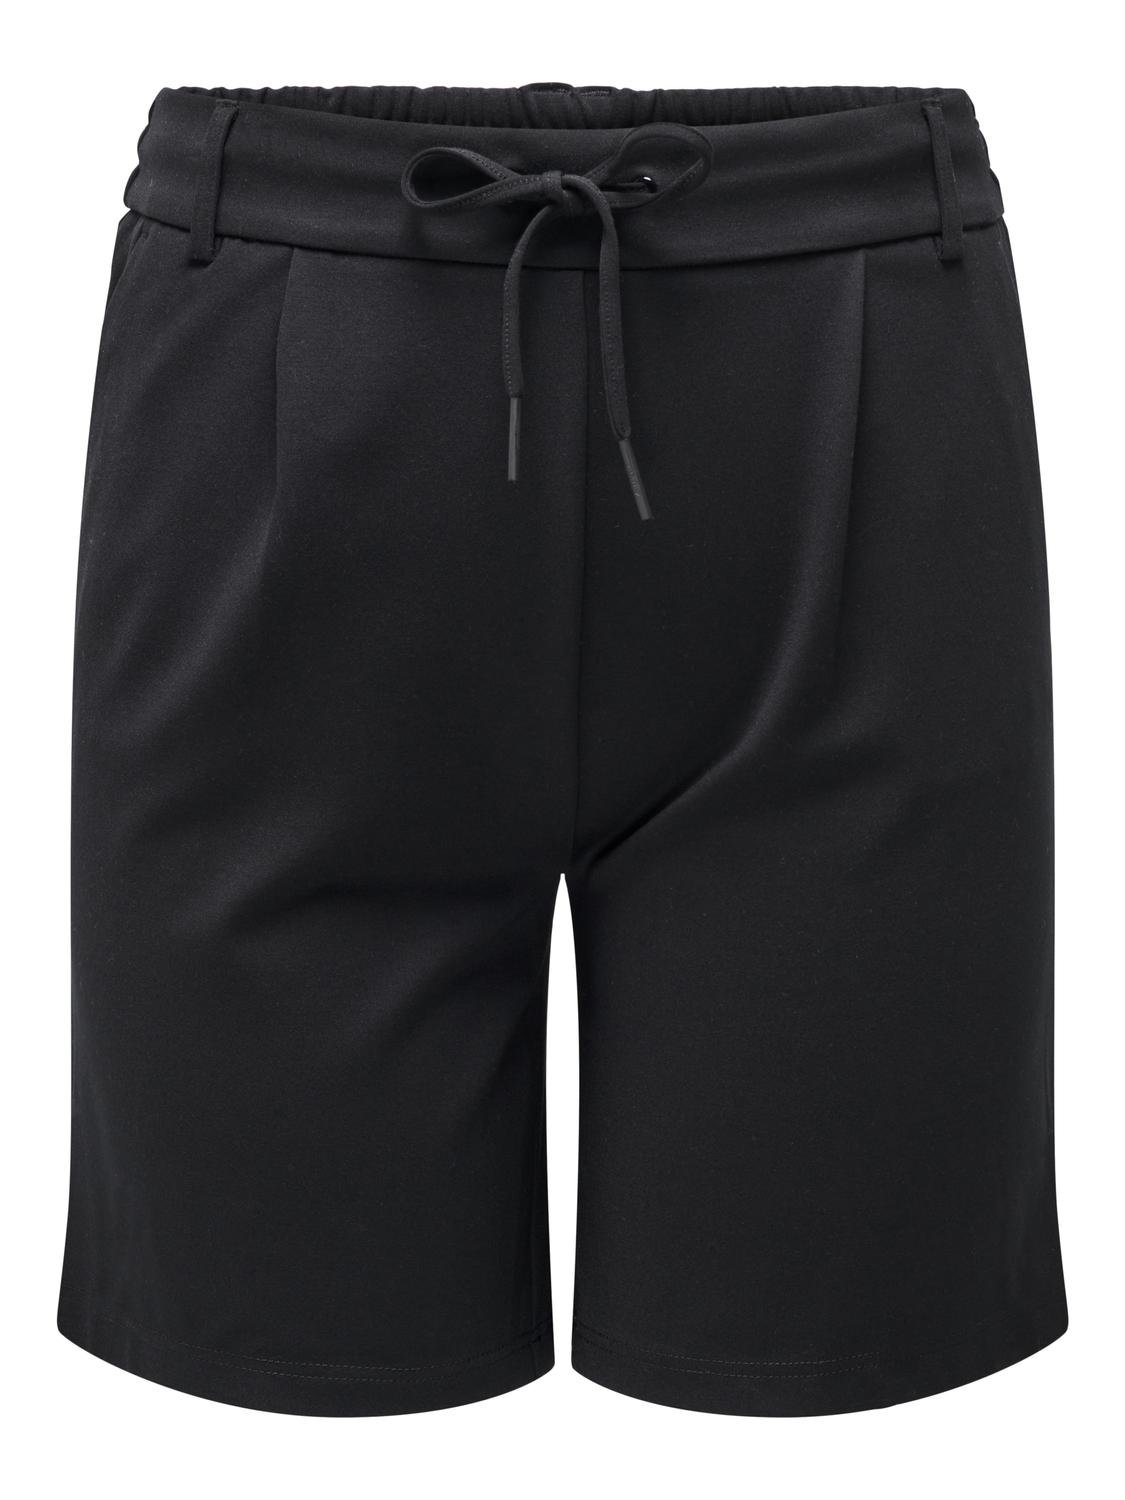 ONLY Curvy lange shorts med bindebånd -Black - 15293187